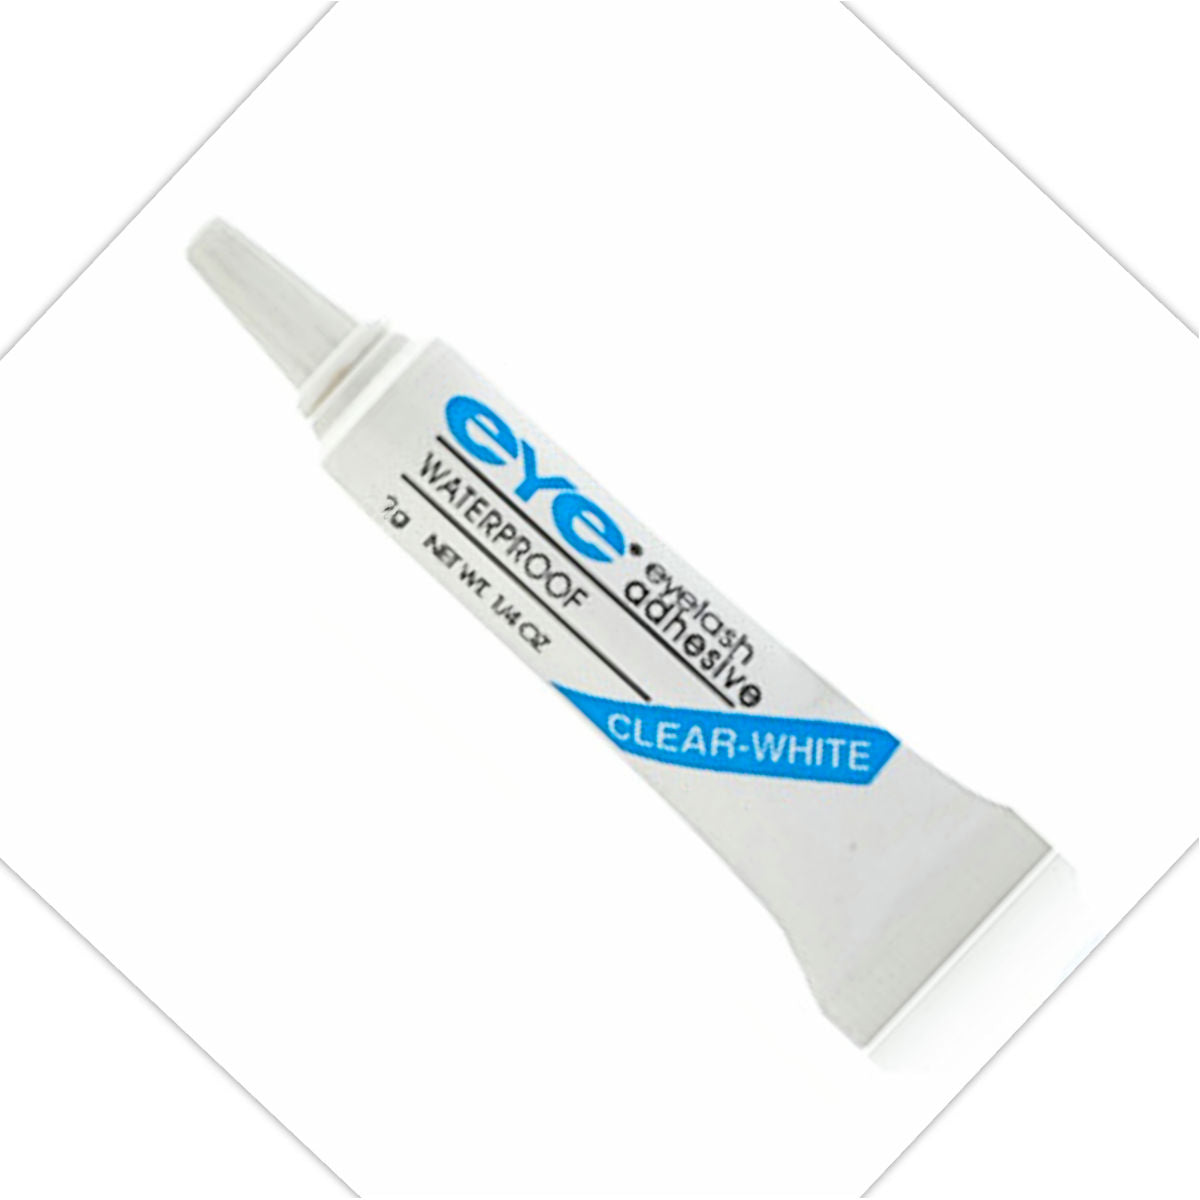 EYE Eyelash Adhesive 7gm Clear-White Waterproof glue Dries Clear